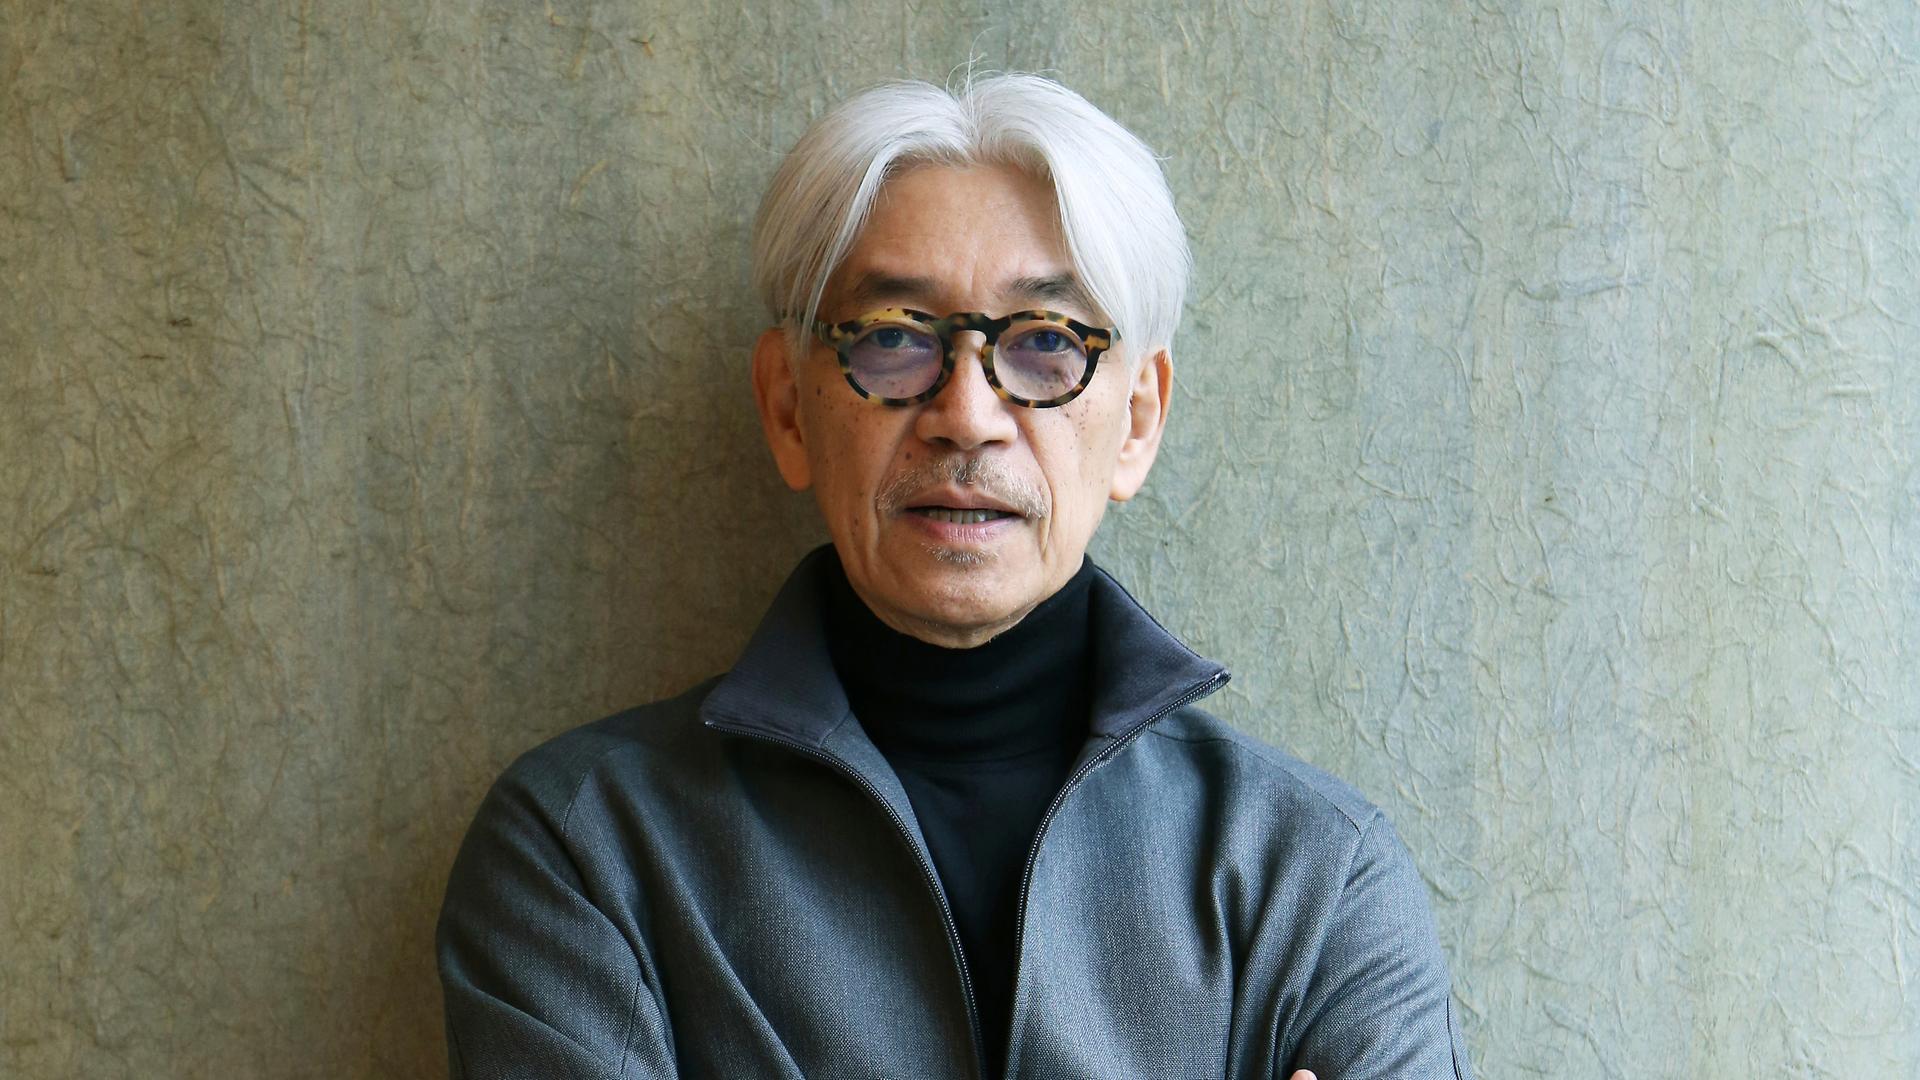 Der japanische Komponist und Pianist Ryūichi Sakamoto mit auffällig dunkel gerahmter Brille und verschränkten Armen lehnt an einer grauen Wand.